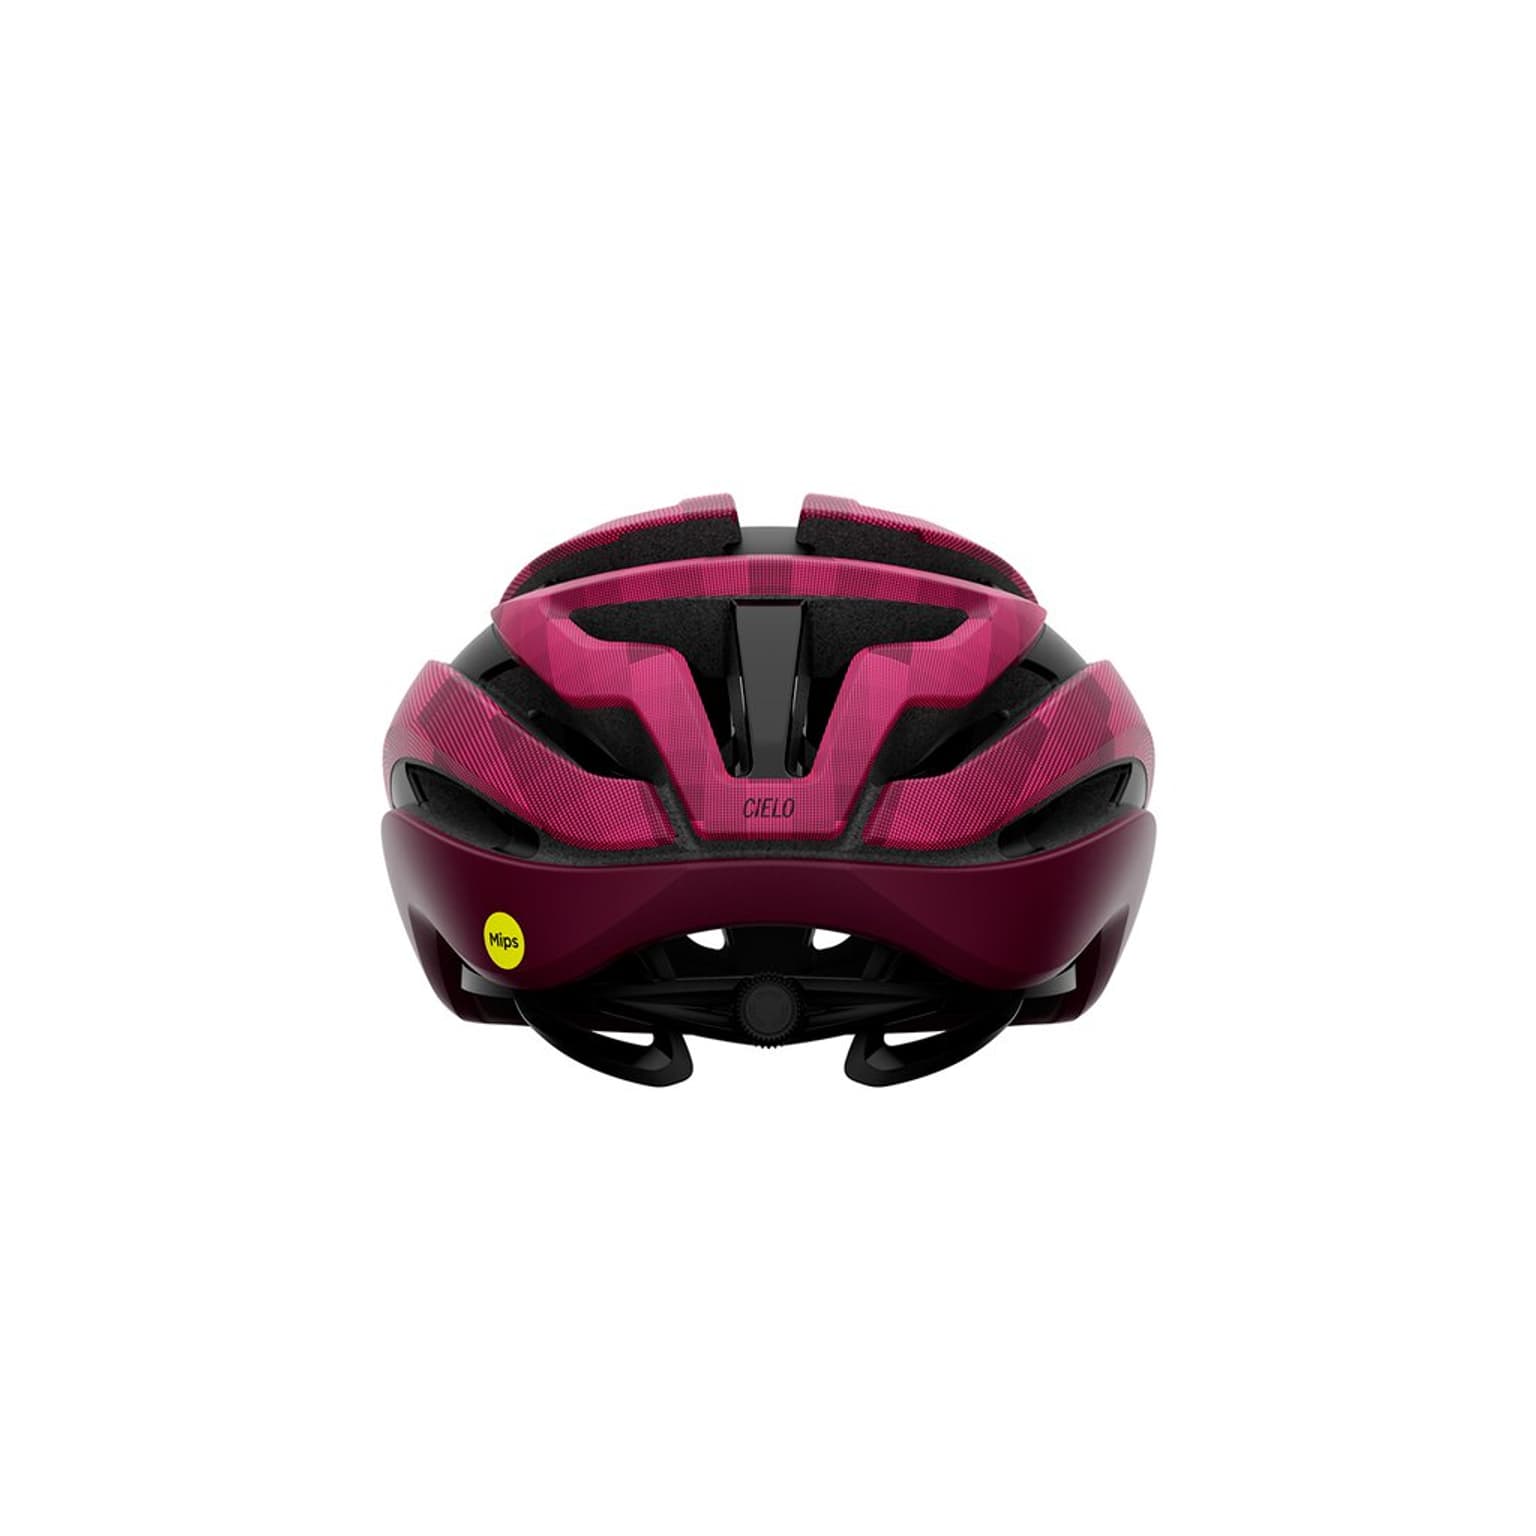 Giro Giro Cielo MIPS Helmet Velohelm bordeaux 2